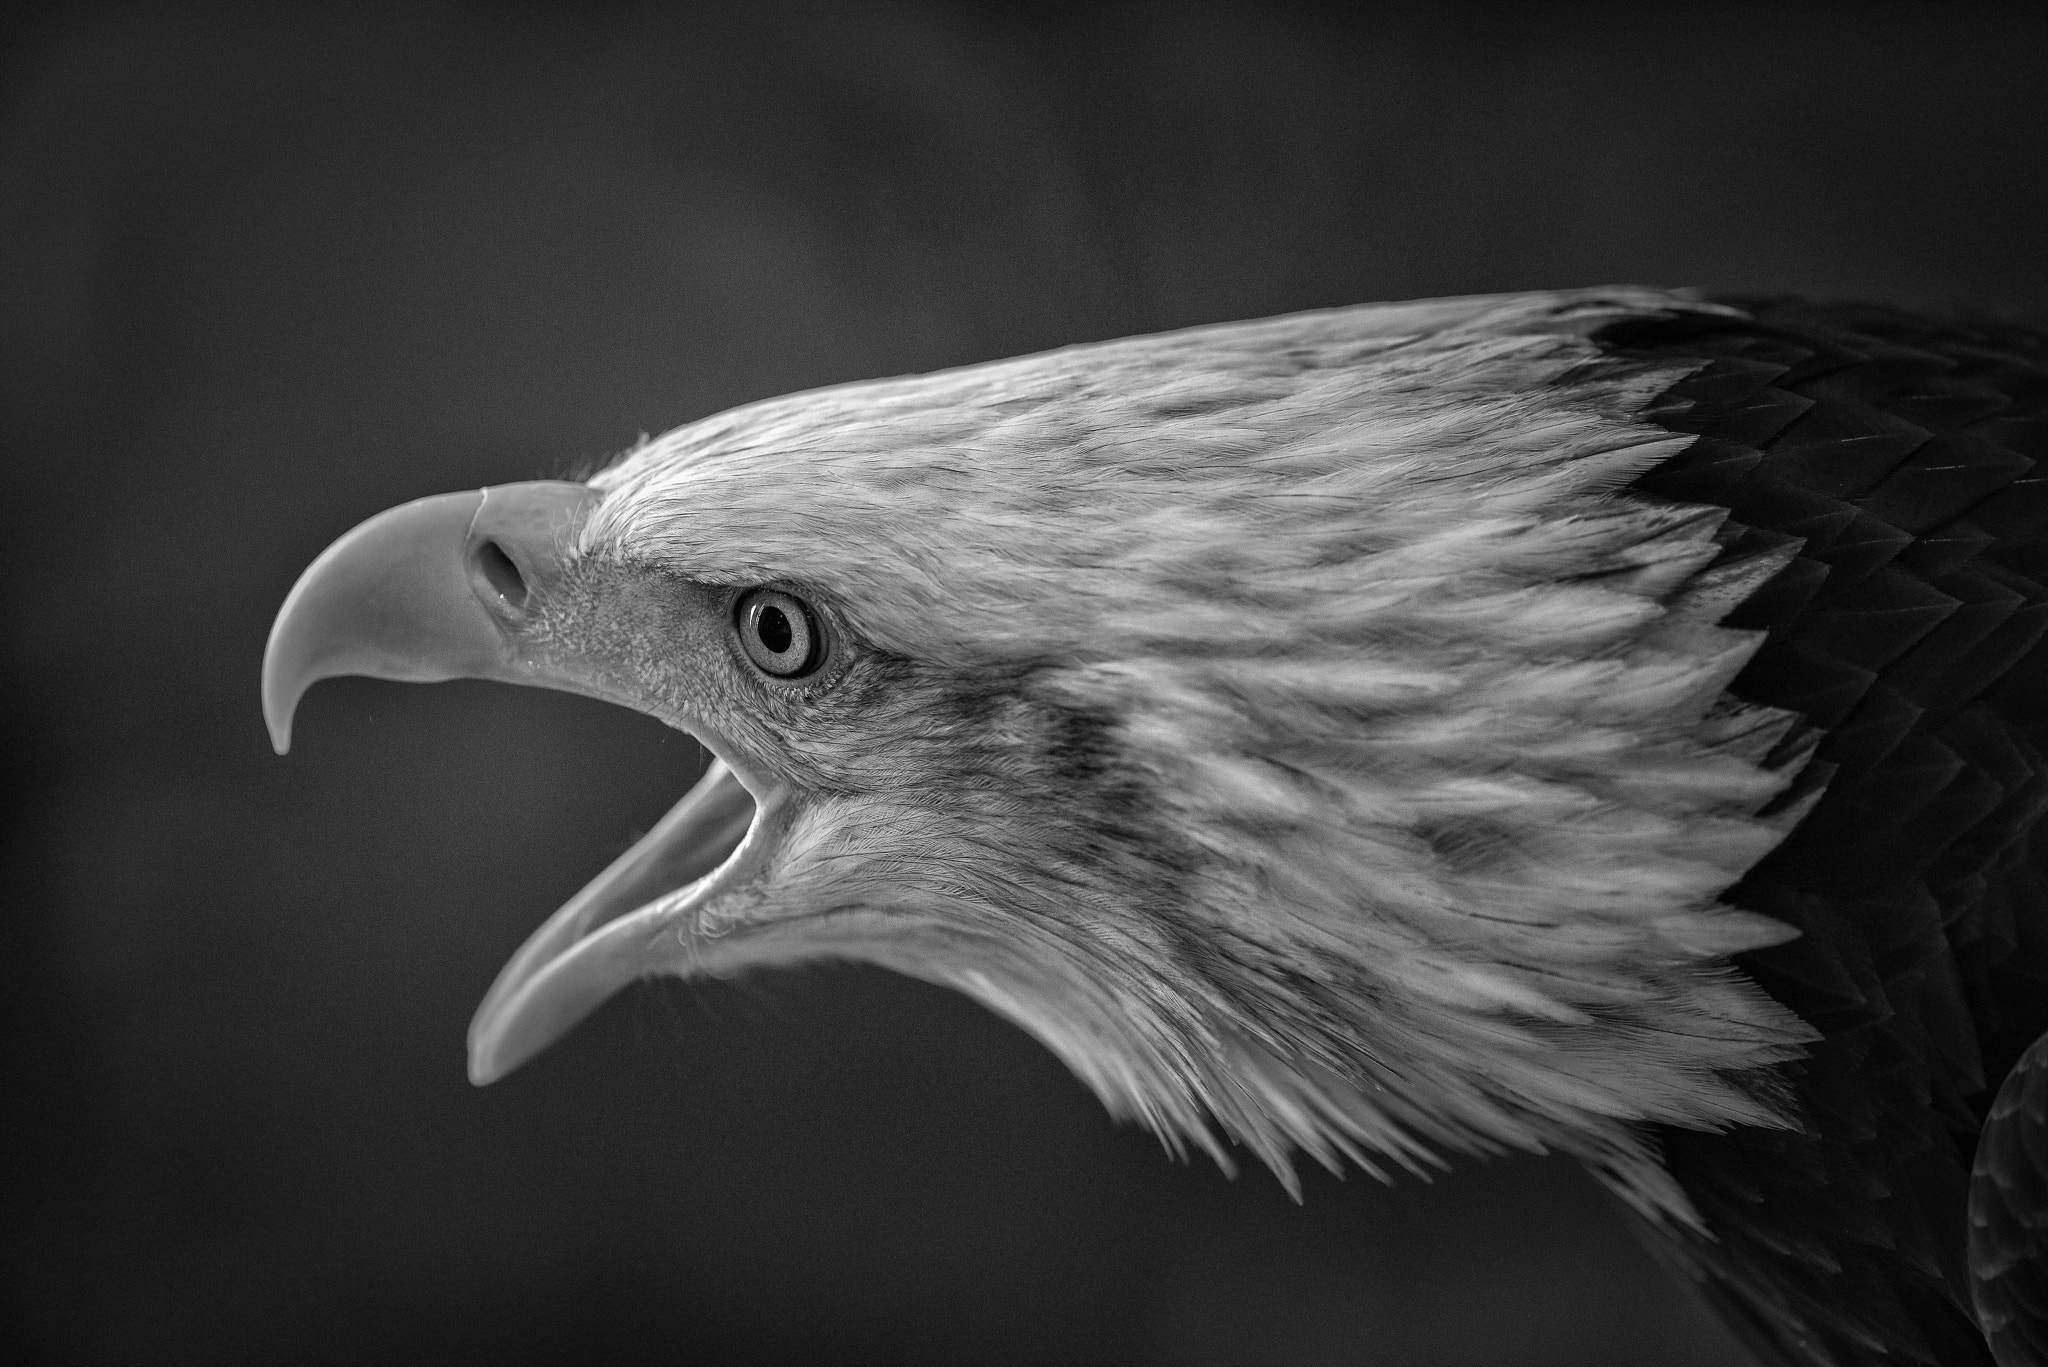 Nikon D800 + AF-S Nikkor 300mm f/2.8D IF-ED II sample photo. The bald eagle photography